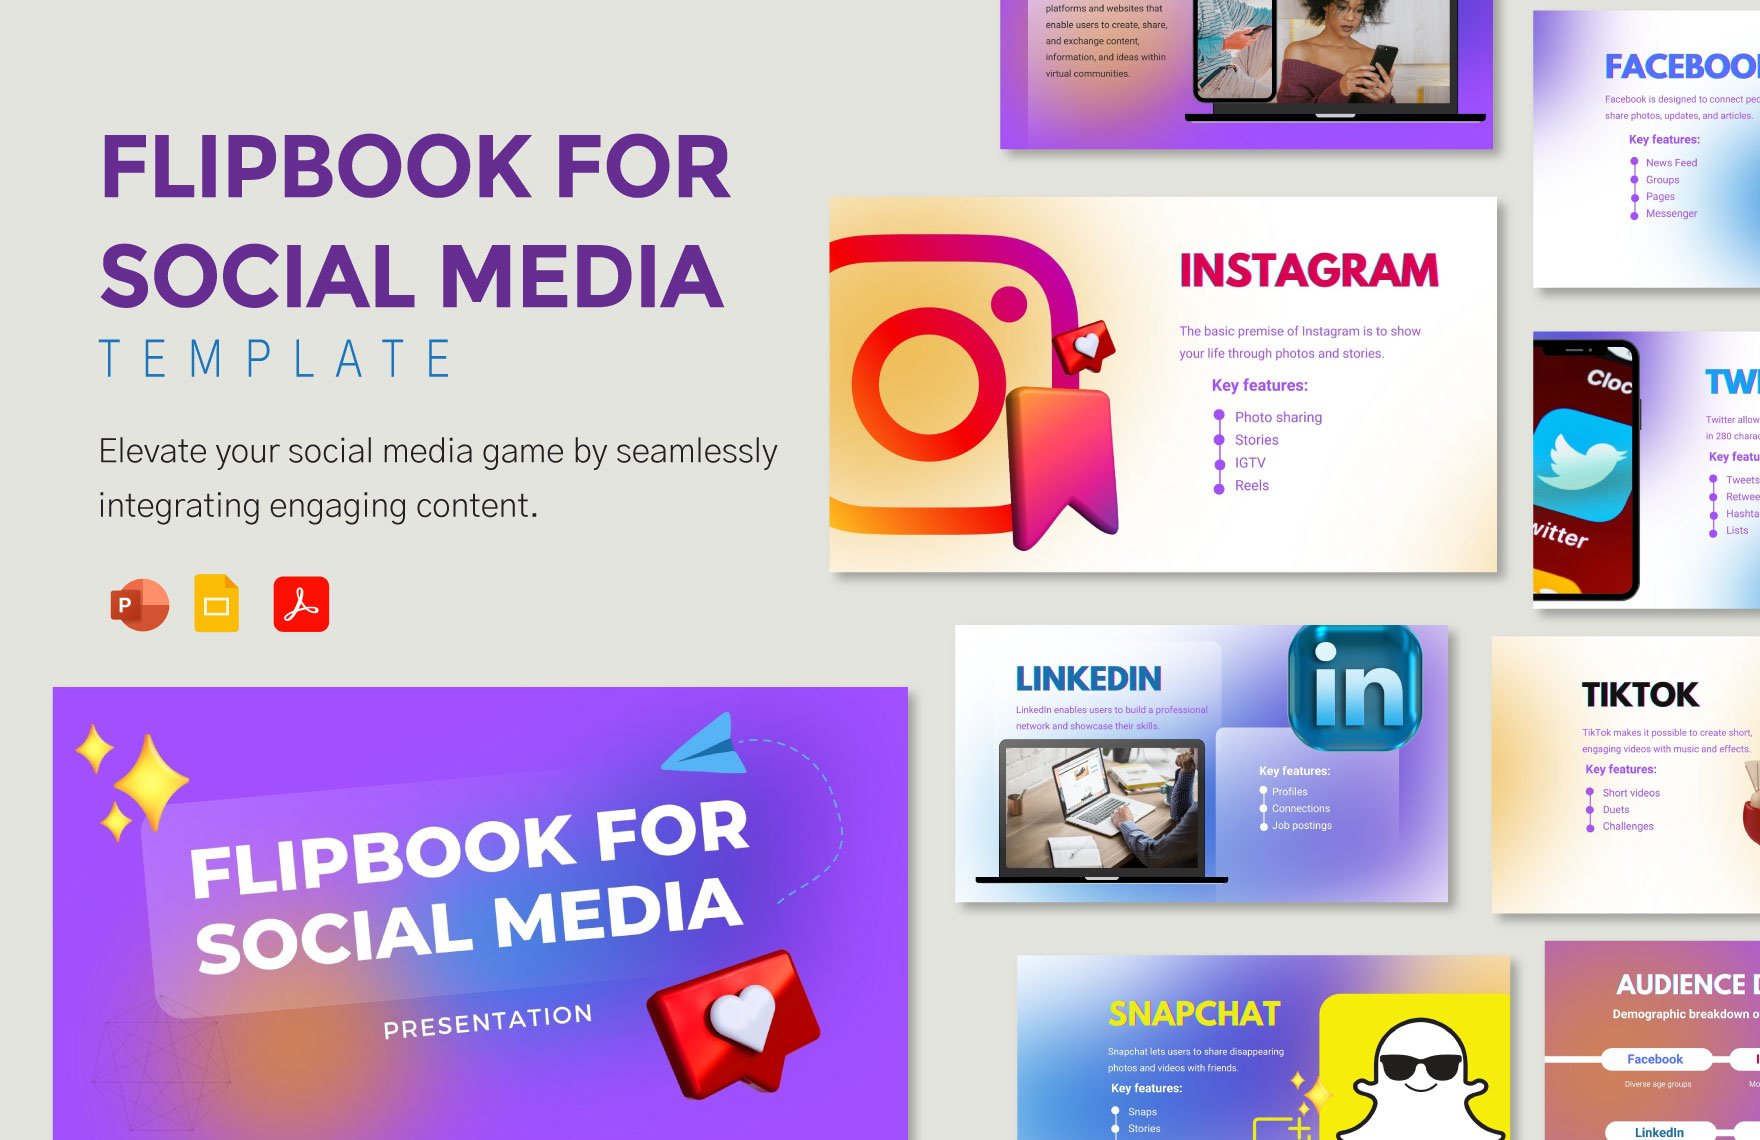 Flipbook Template for Social Media